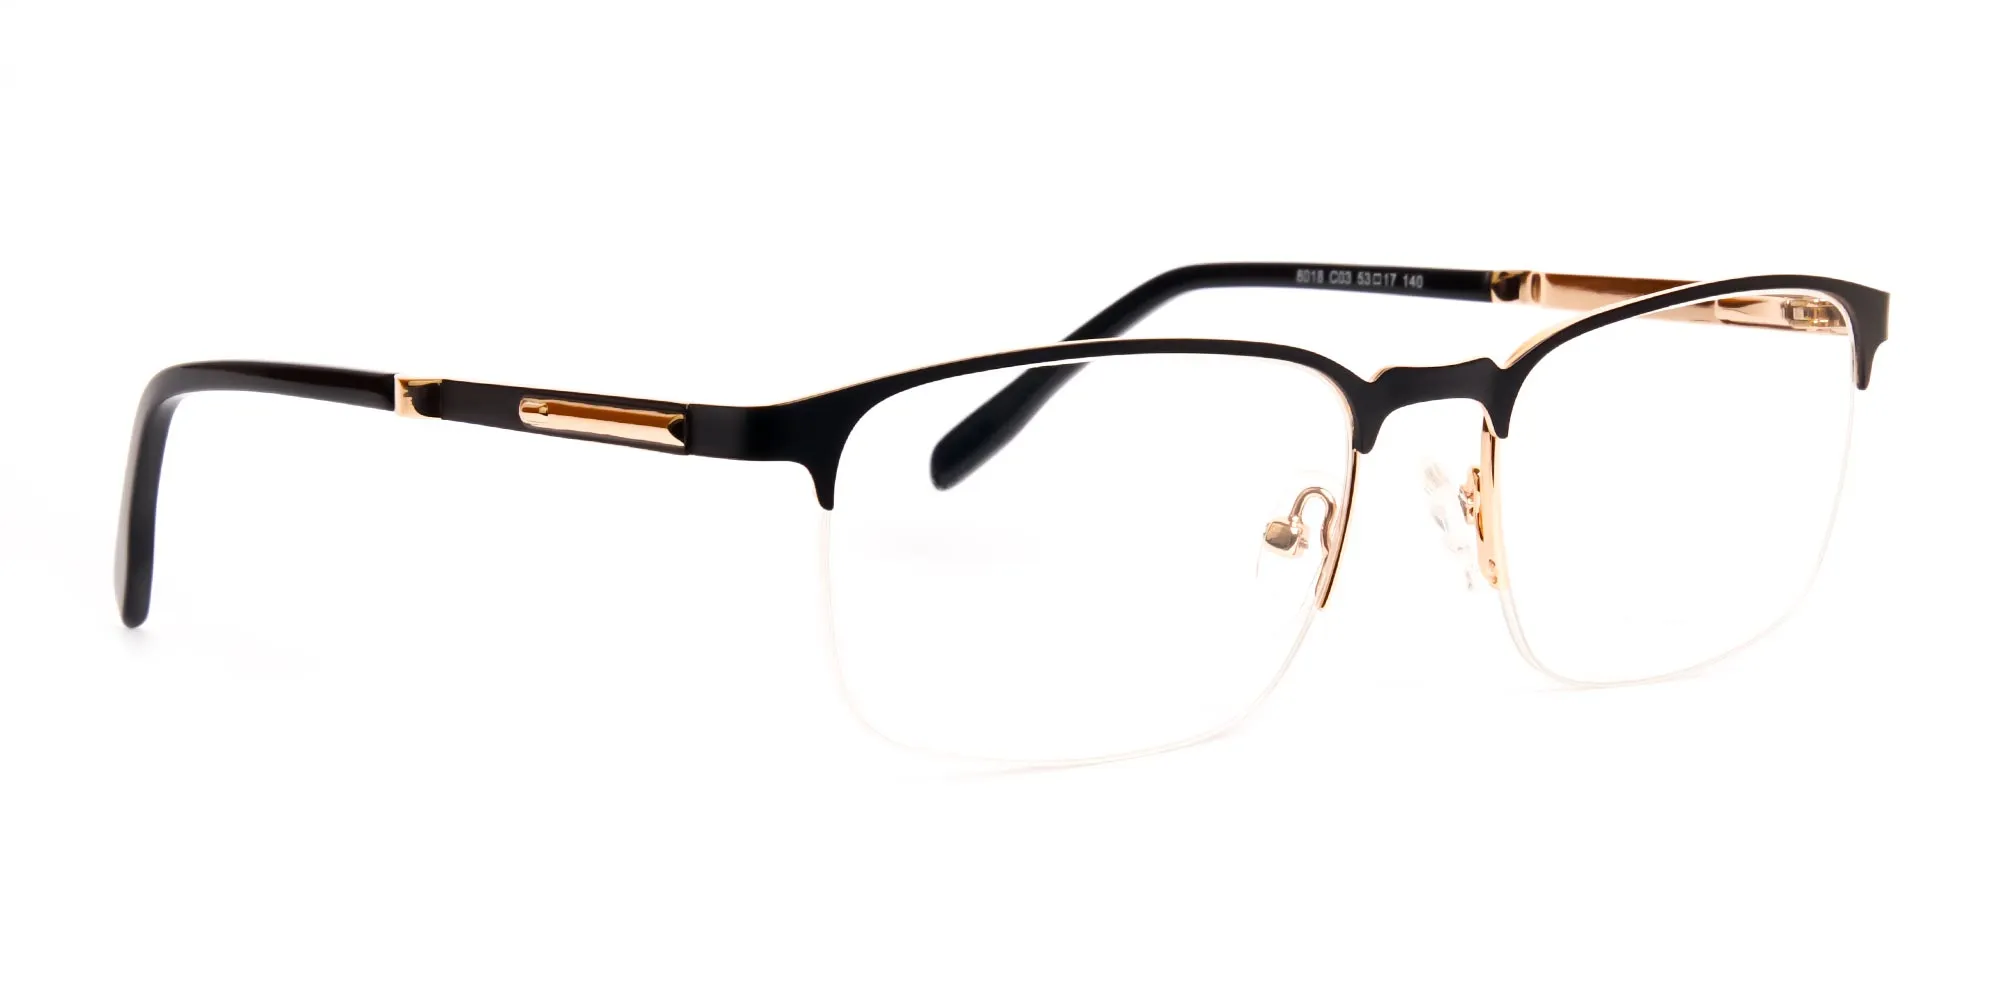 TOTON 3 - Black & Gold Rectangular Half-Rim Glasses | Specscart.®